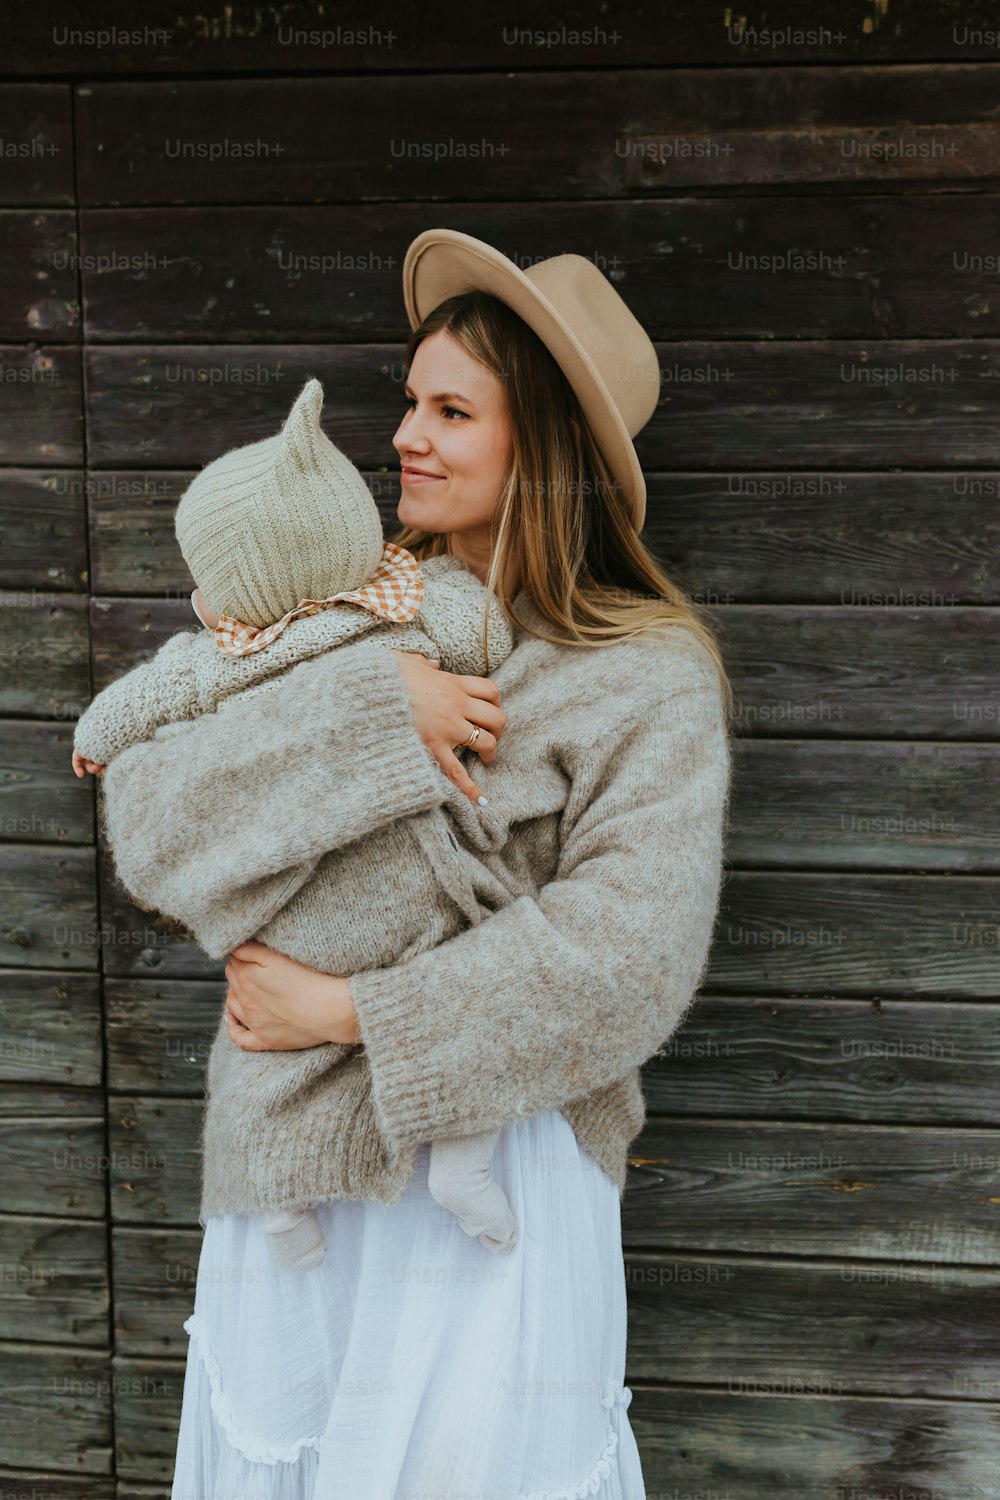 Eine Frau mit Hut, die ein Baby im Arm hält